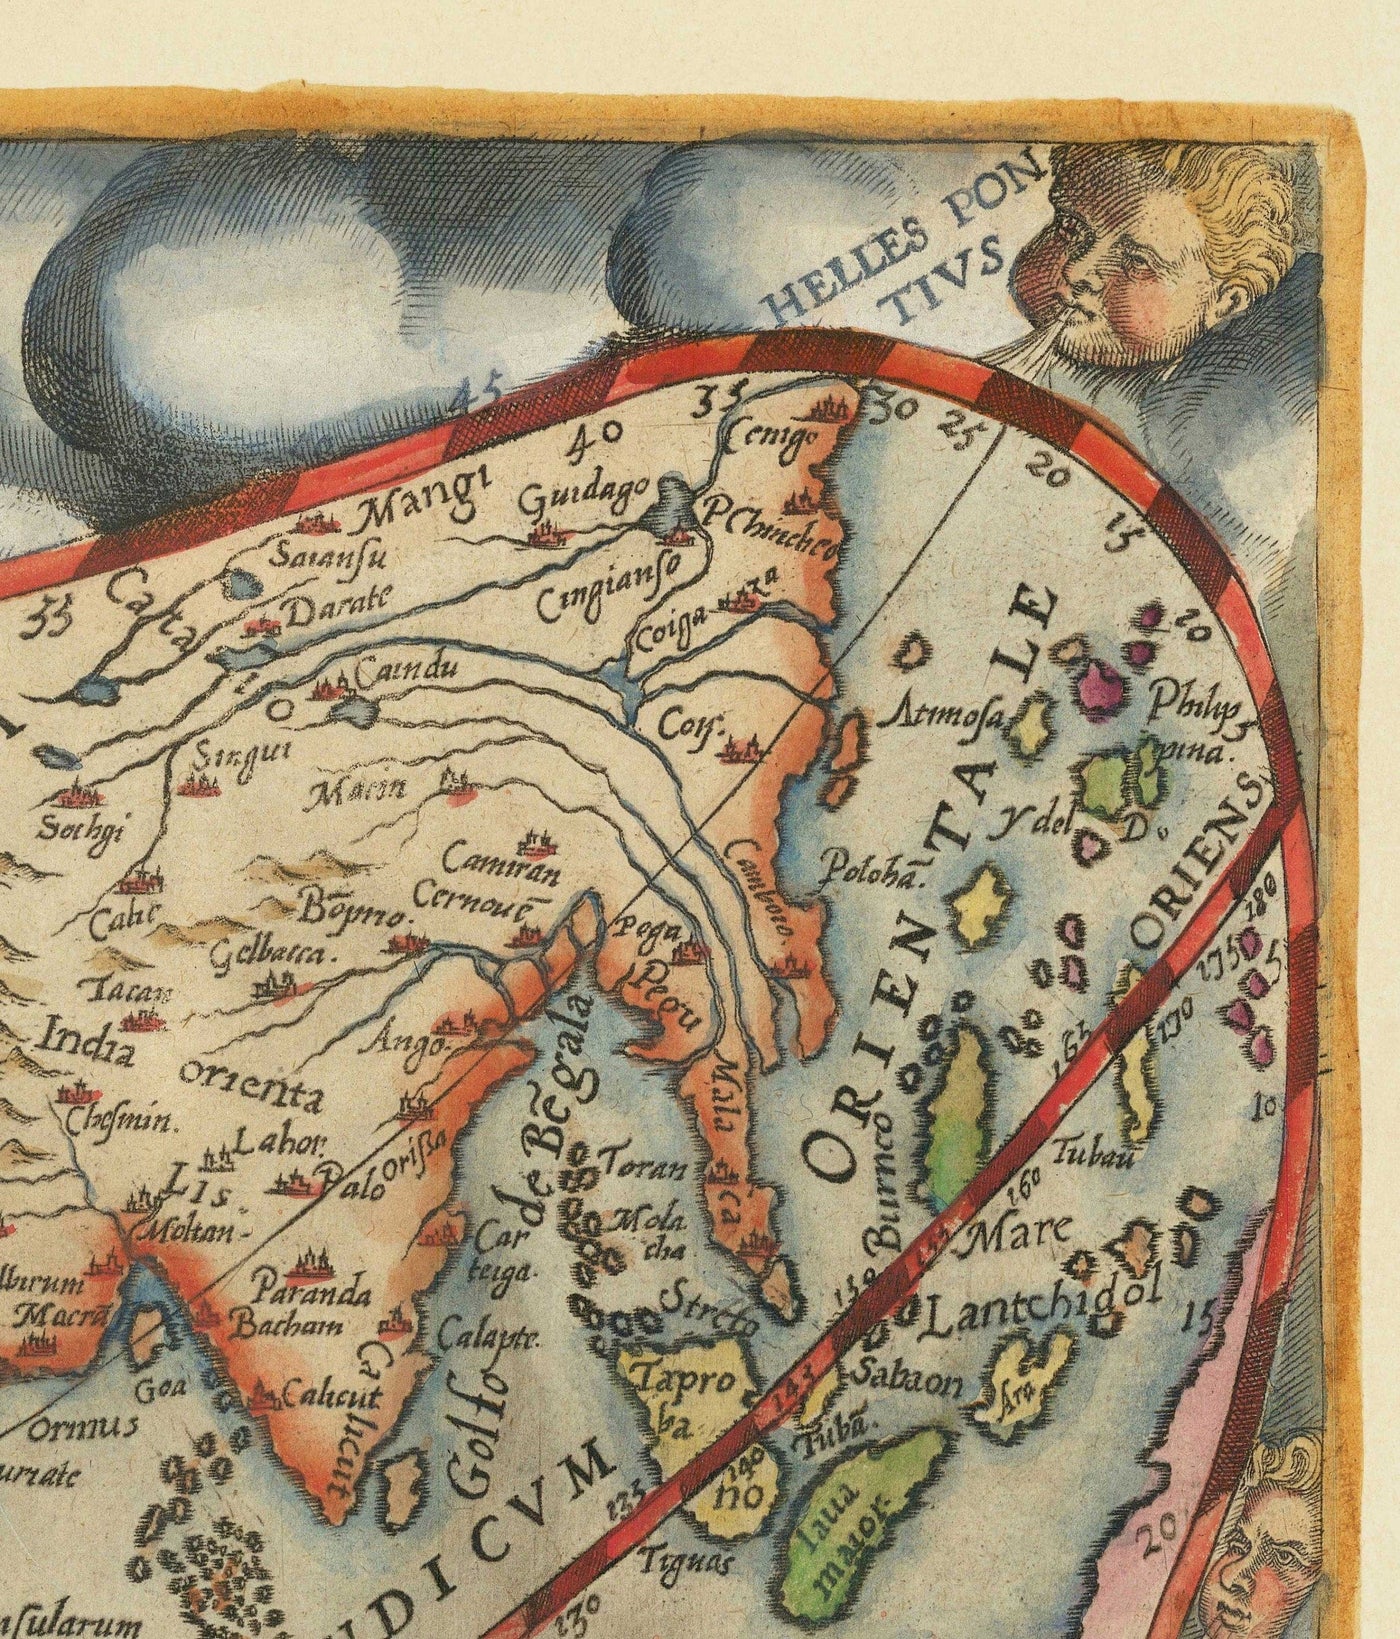 Mapa del mundo muy antiguo, 1571 por Gerard De Jode - Proyección cordiforme, Querubines, Antártida, Atlas, Colonialismo temprano